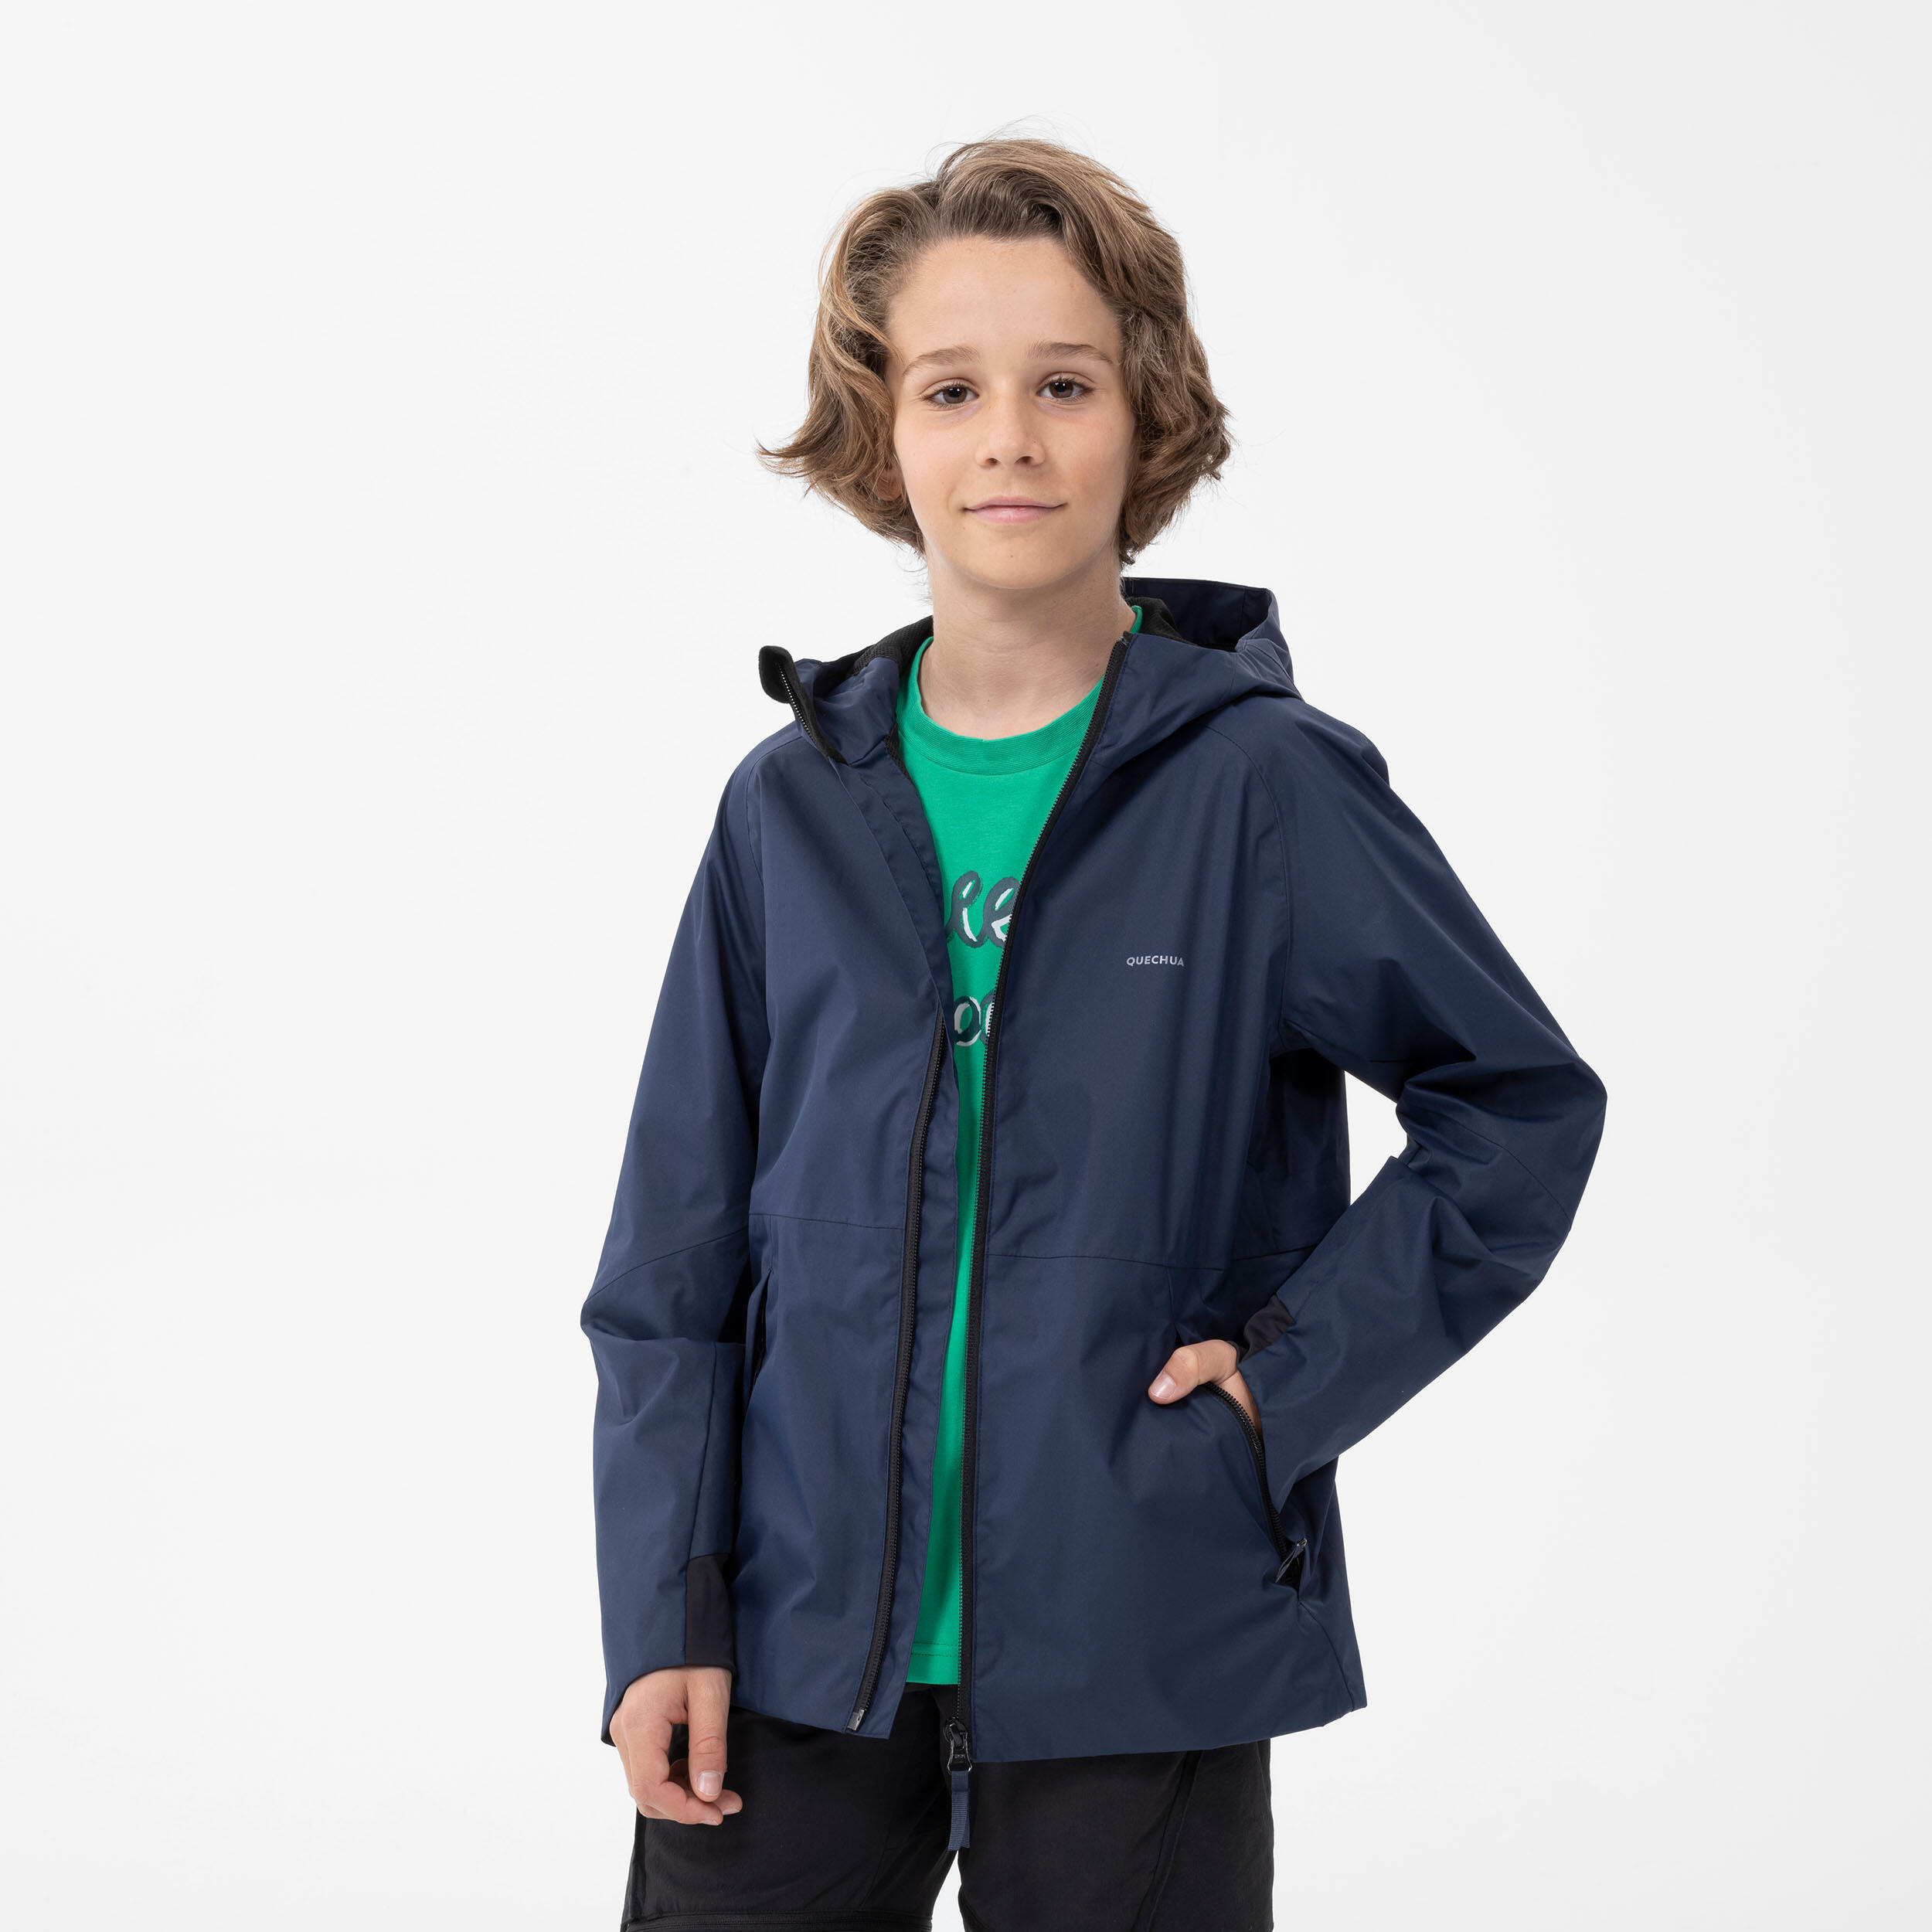 Kids’ Waterproof Jacket - MH 500 Navy Blue - QUECHUA